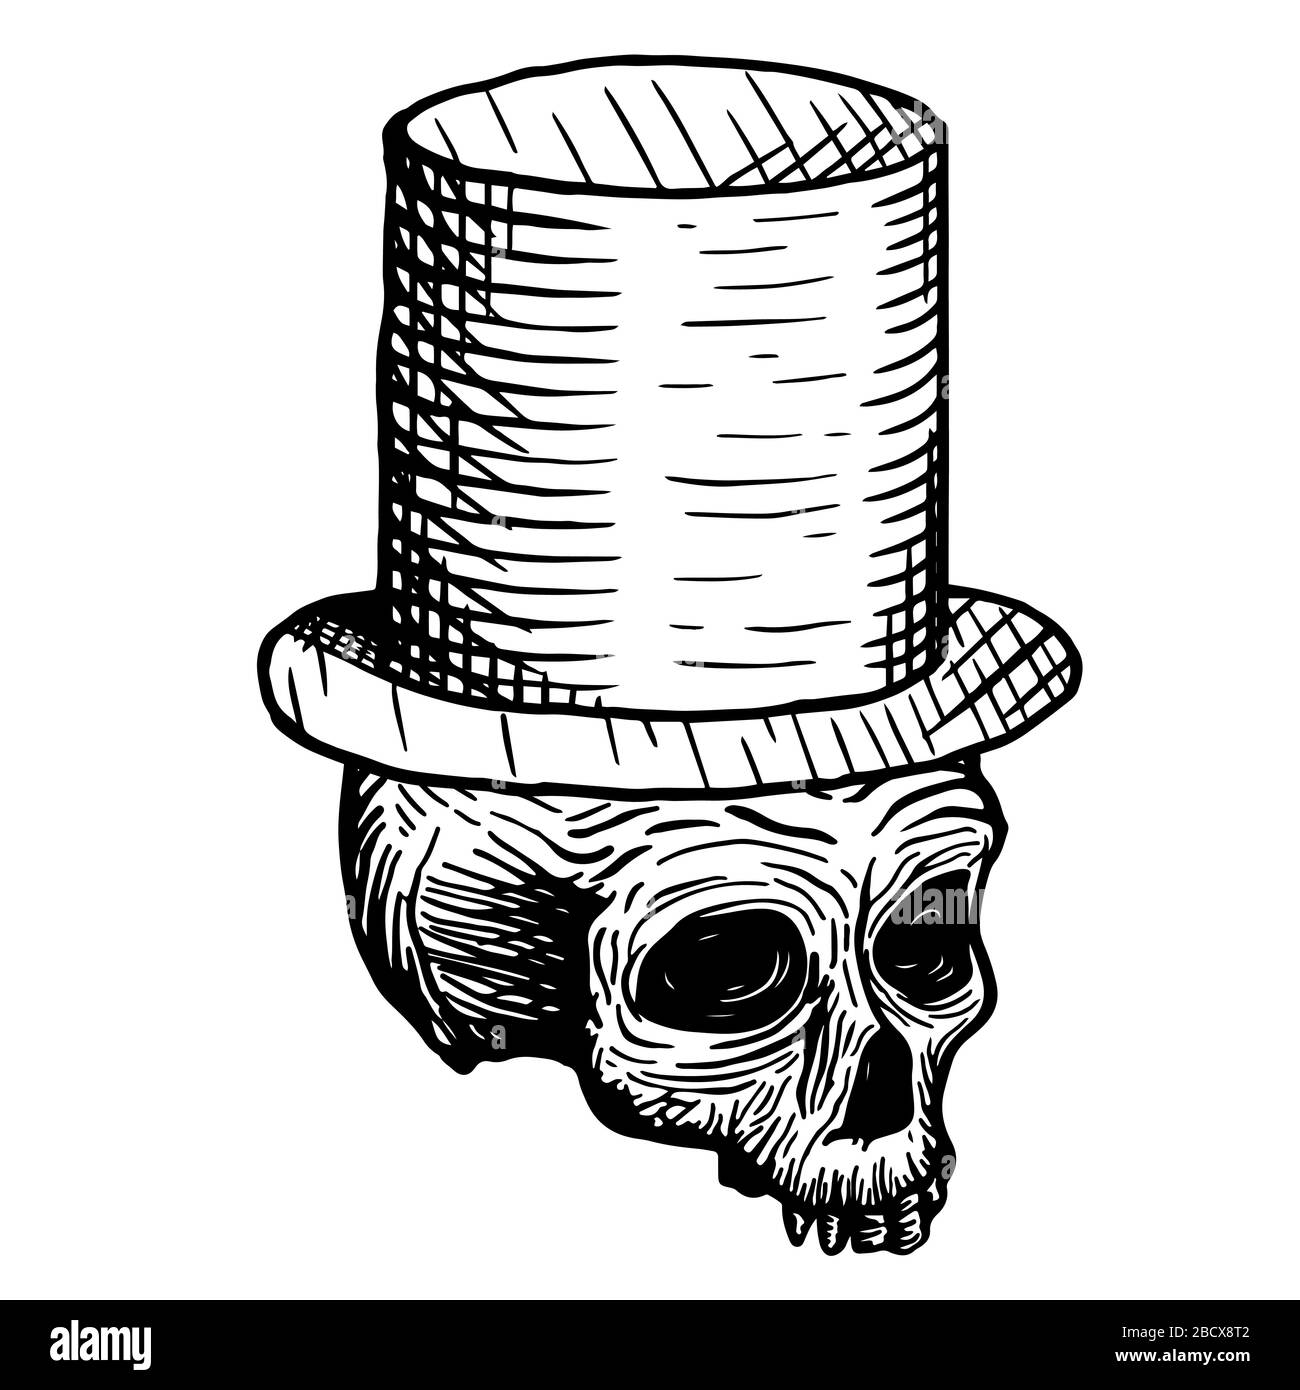 Handgezeichneter Schädel eines Toten in einem Hut, auf weißem Grund. Vektorgrafiken. Stock Vektor